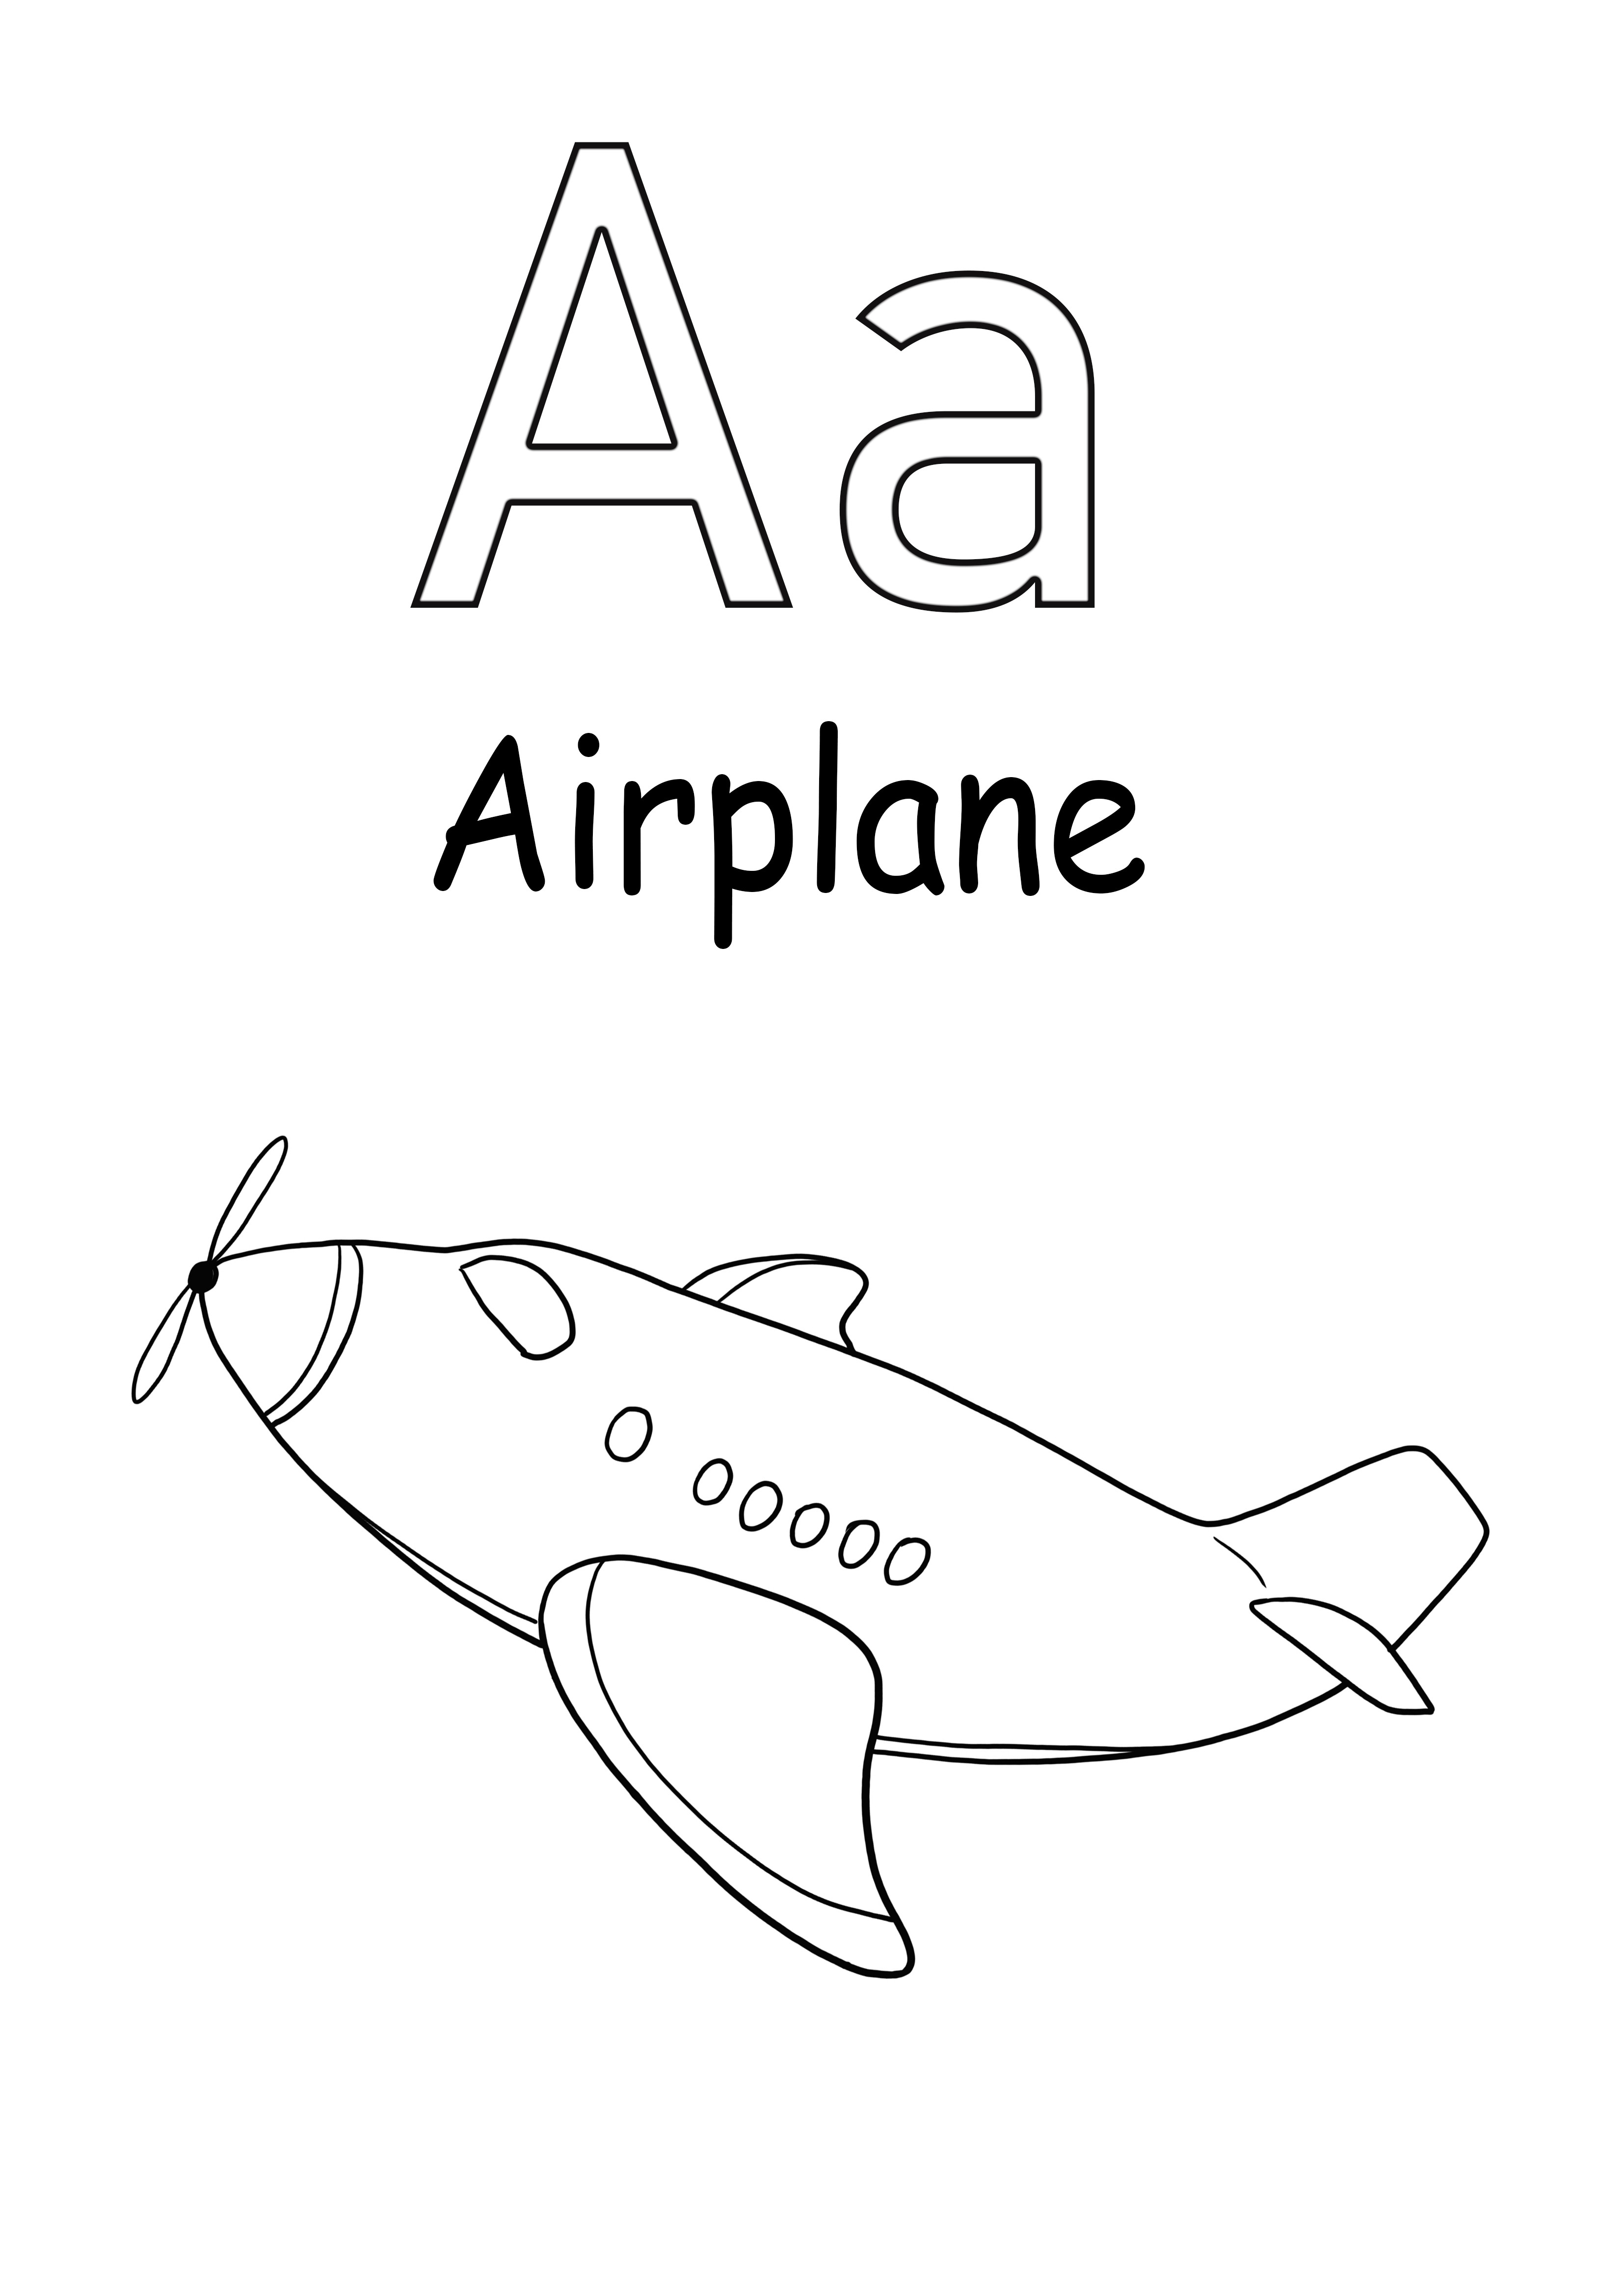 A é para impressão de avião grátis para colorir para crianças